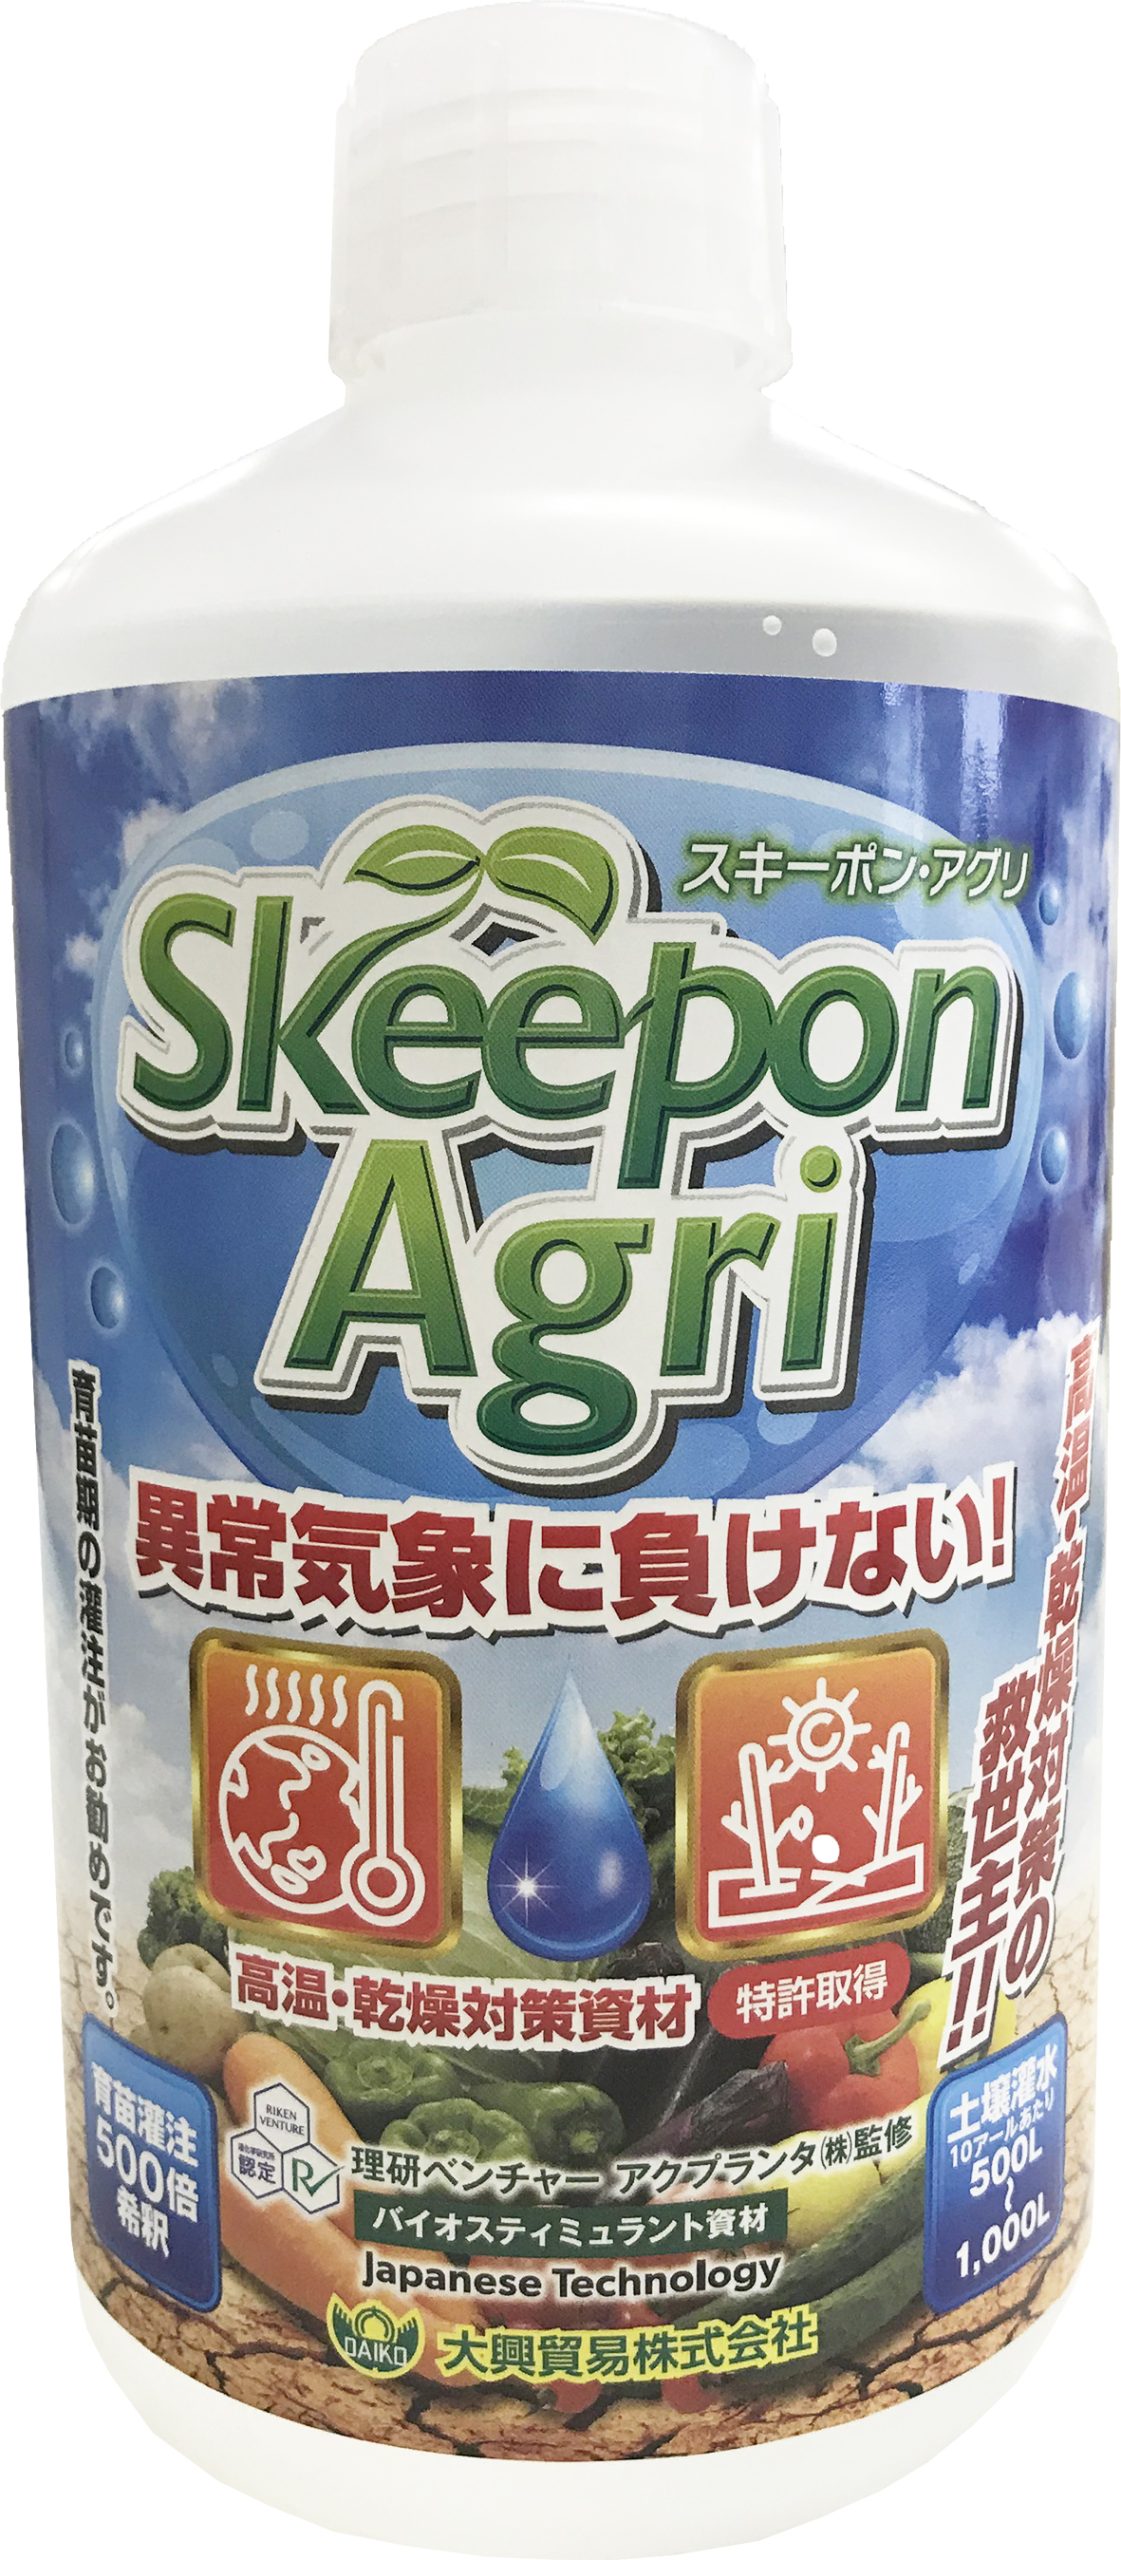 スキーポン・アグリ | 商品紹介 | タキイ農業資材オンライン